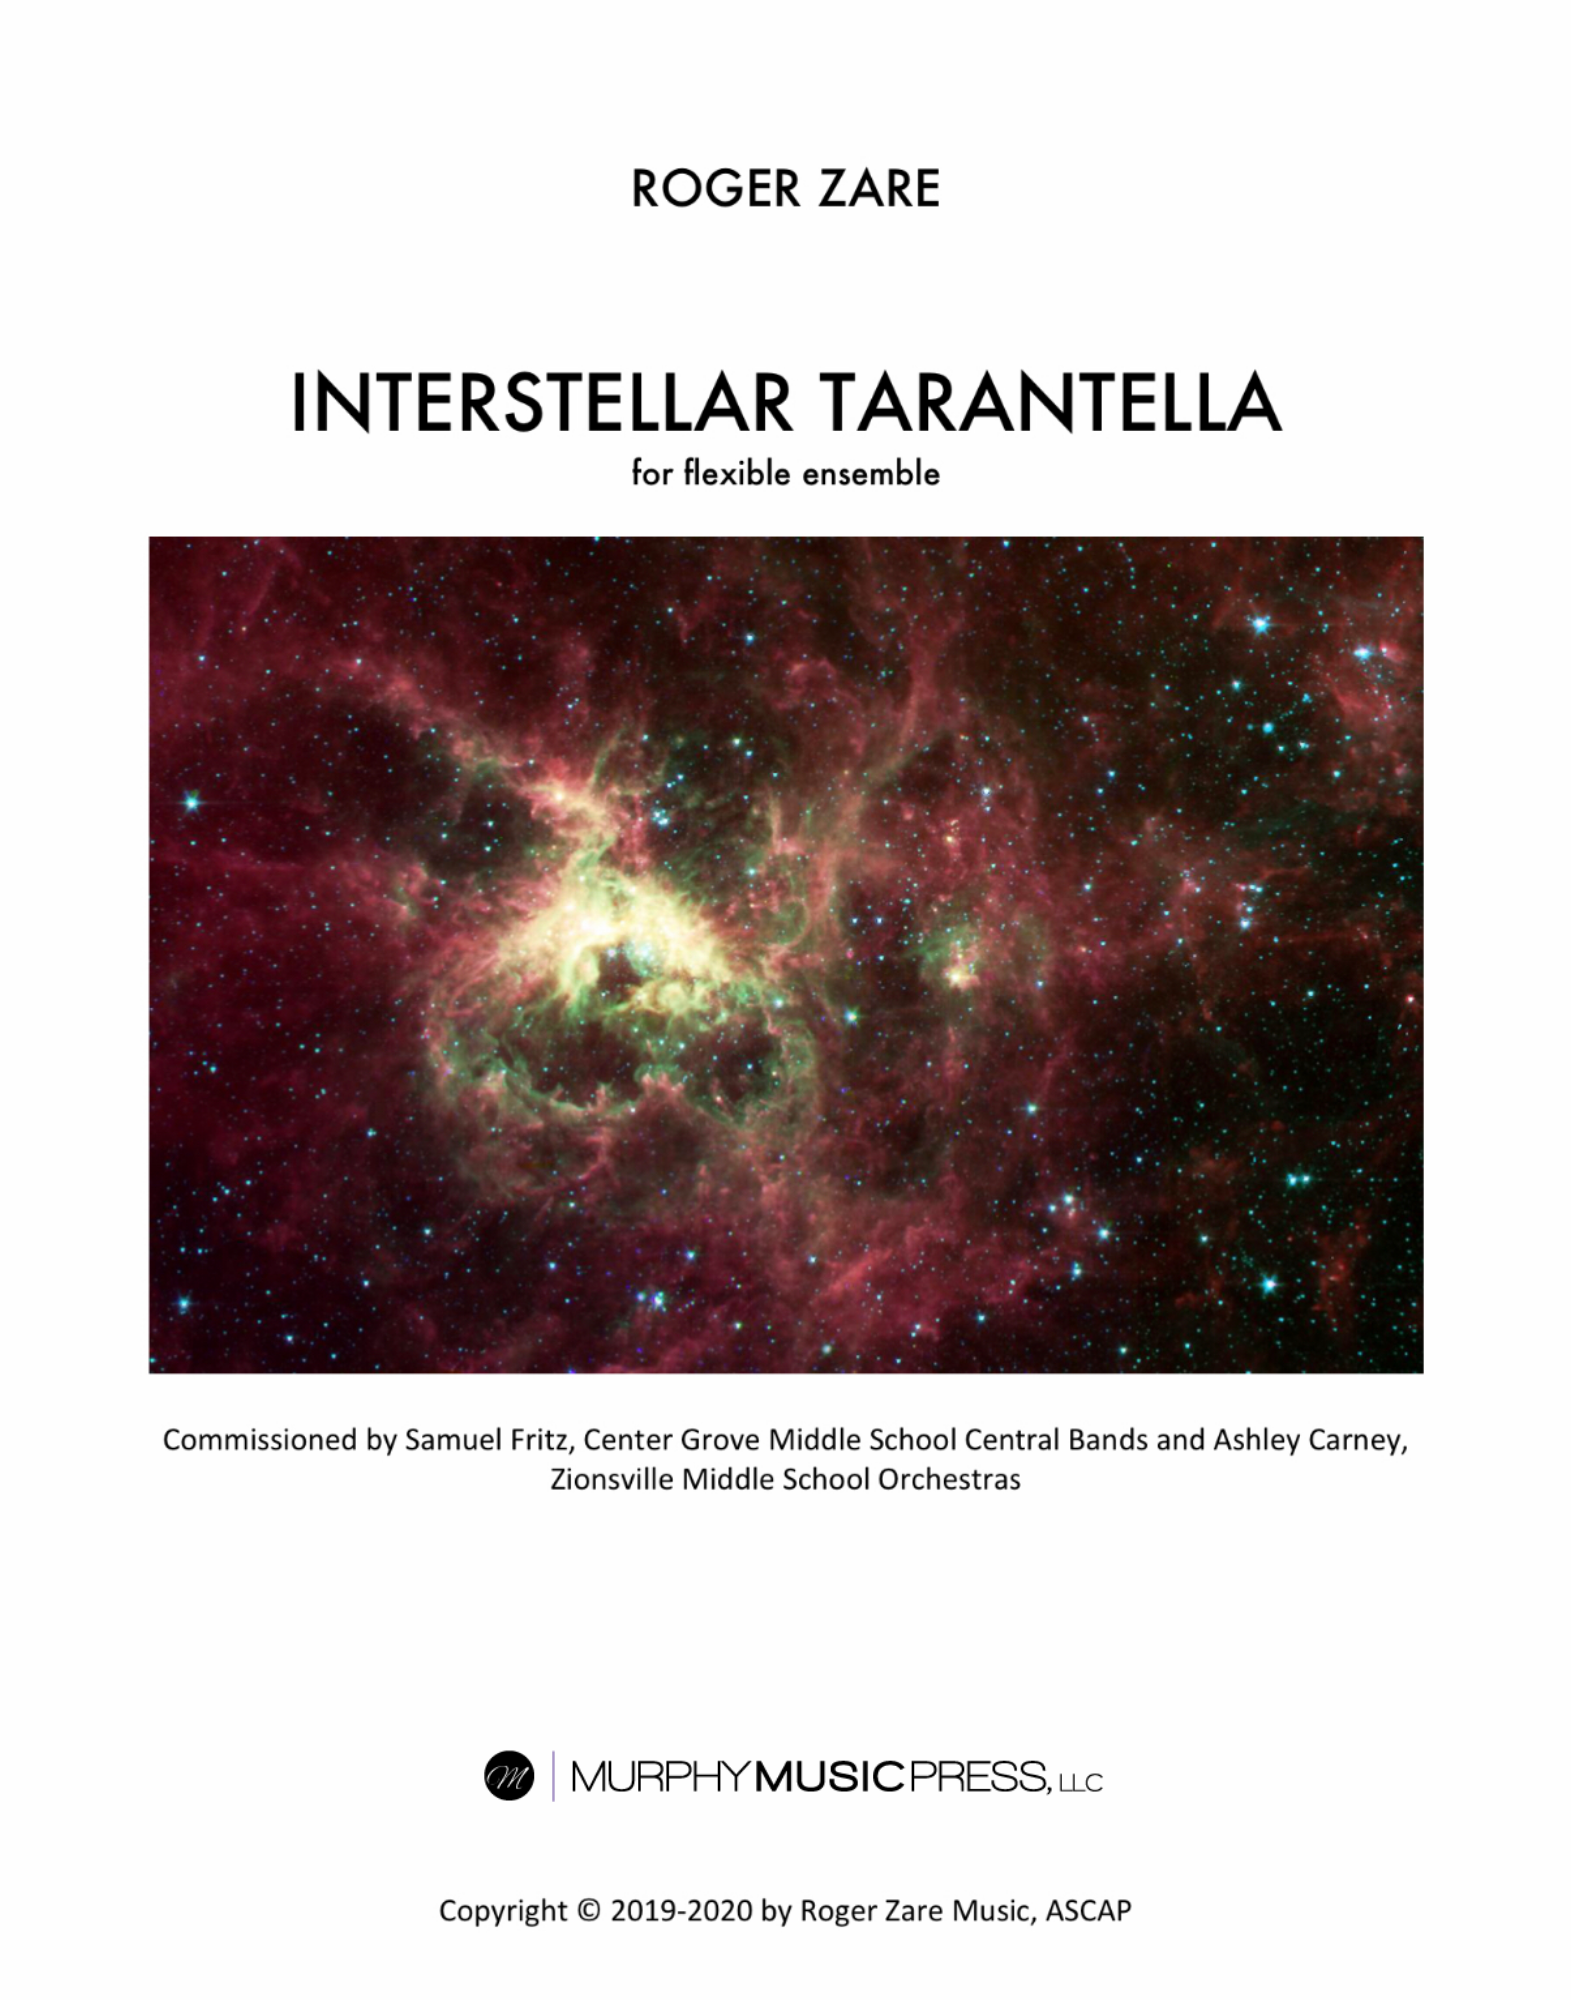 Interstellar Tarantella (Flex Version)  by Roger Zare